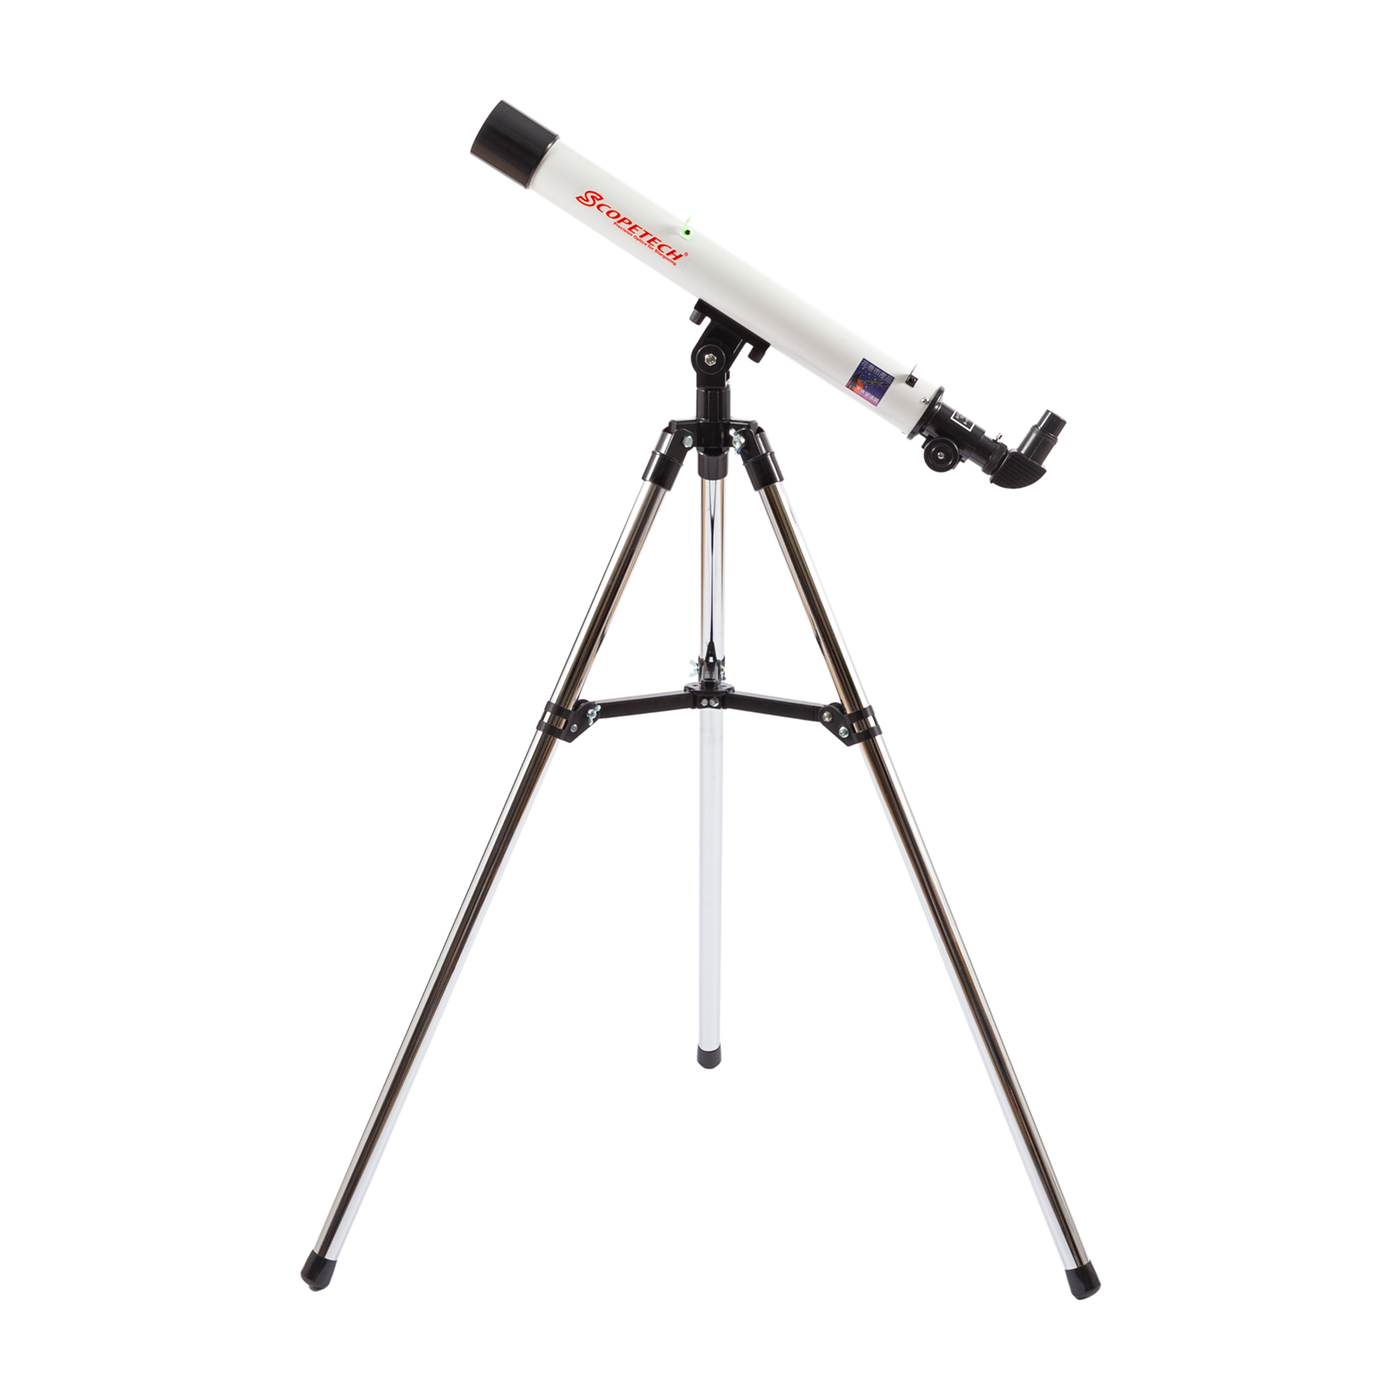 70286円 【特別送料無料！】 子供大人の初心者のための望遠鏡Hig 反射天体望遠鏡ポータブル屈折双眼鏡キット 調節可能な三脚付き - -解像度のプロフェッショナルな星空観察